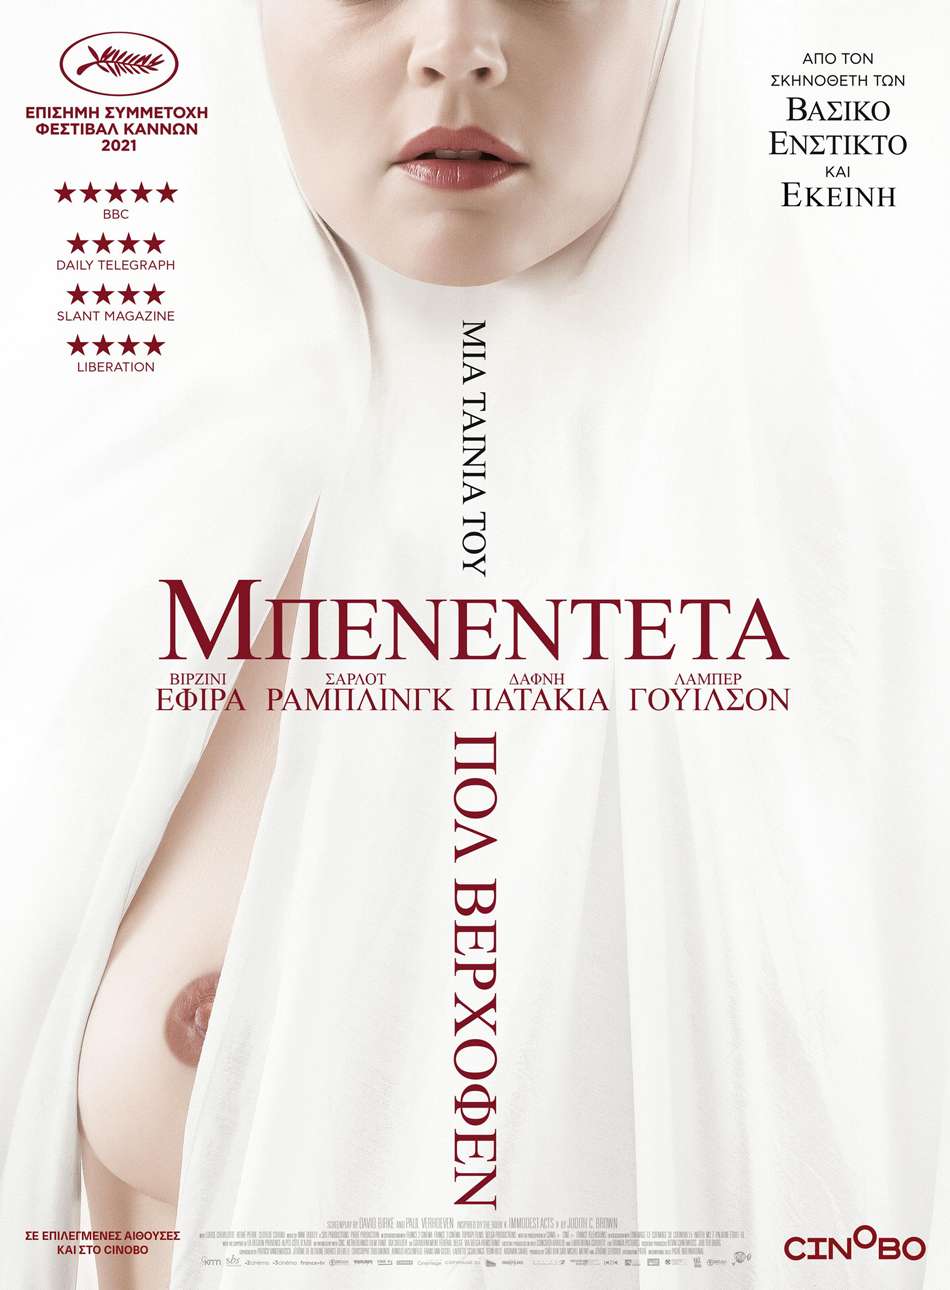 Μπενεντέτα (Benedetta) Poster Πόστερ